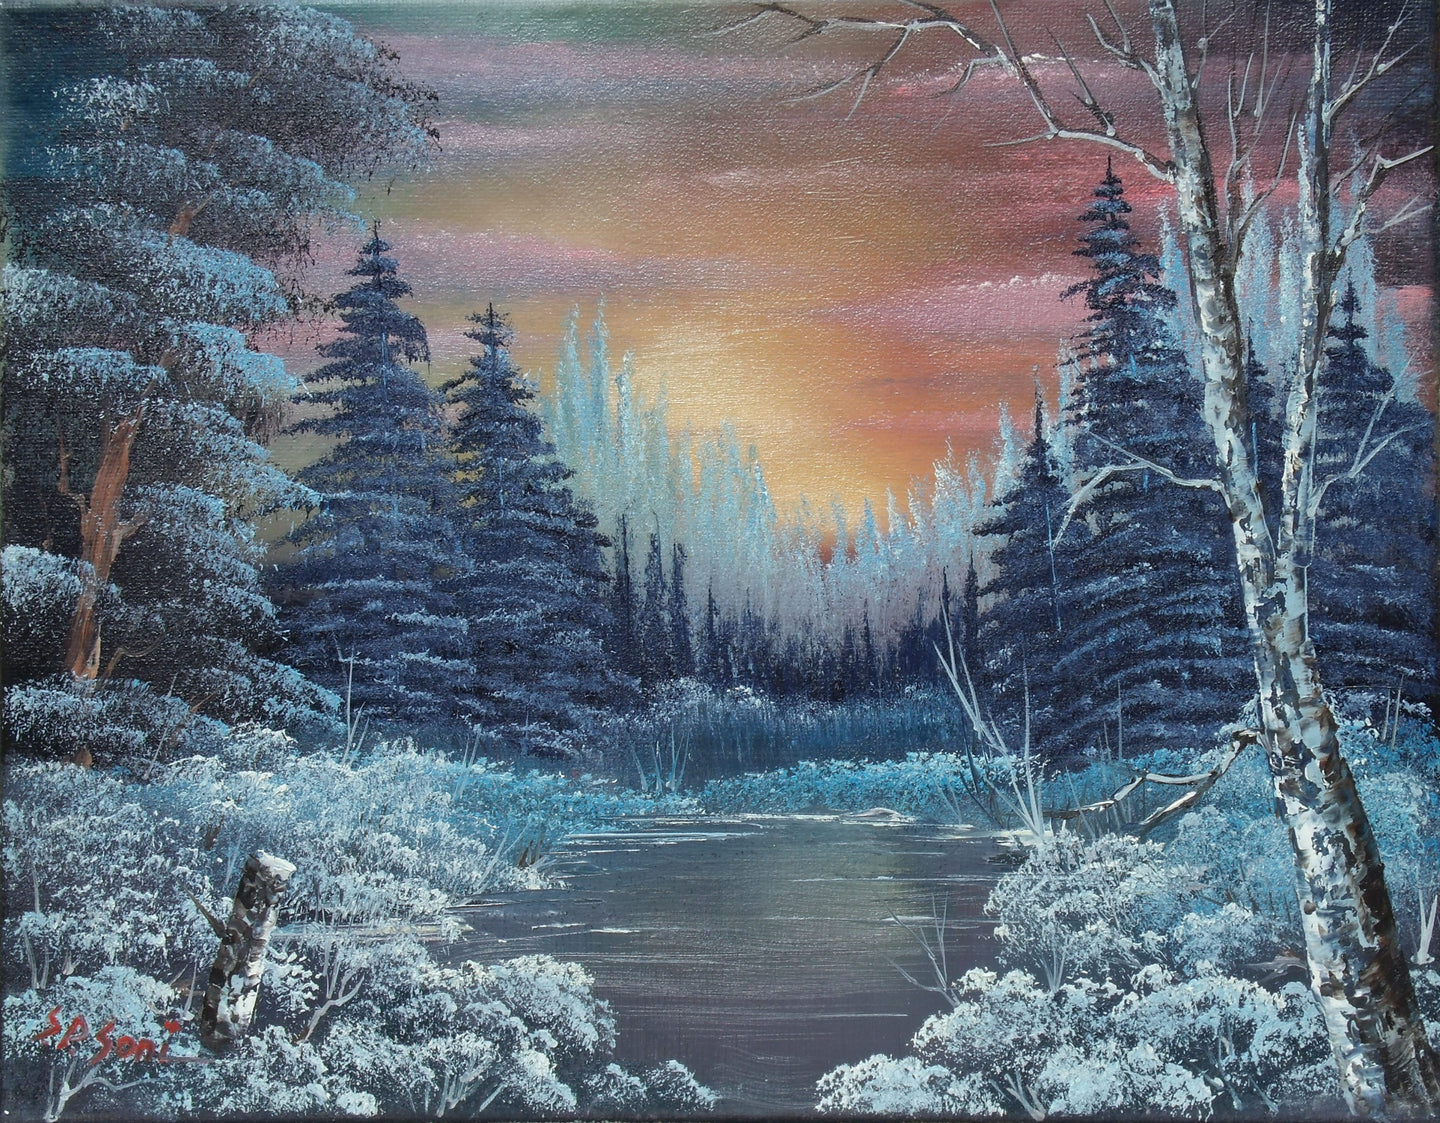 Frozen Landscape